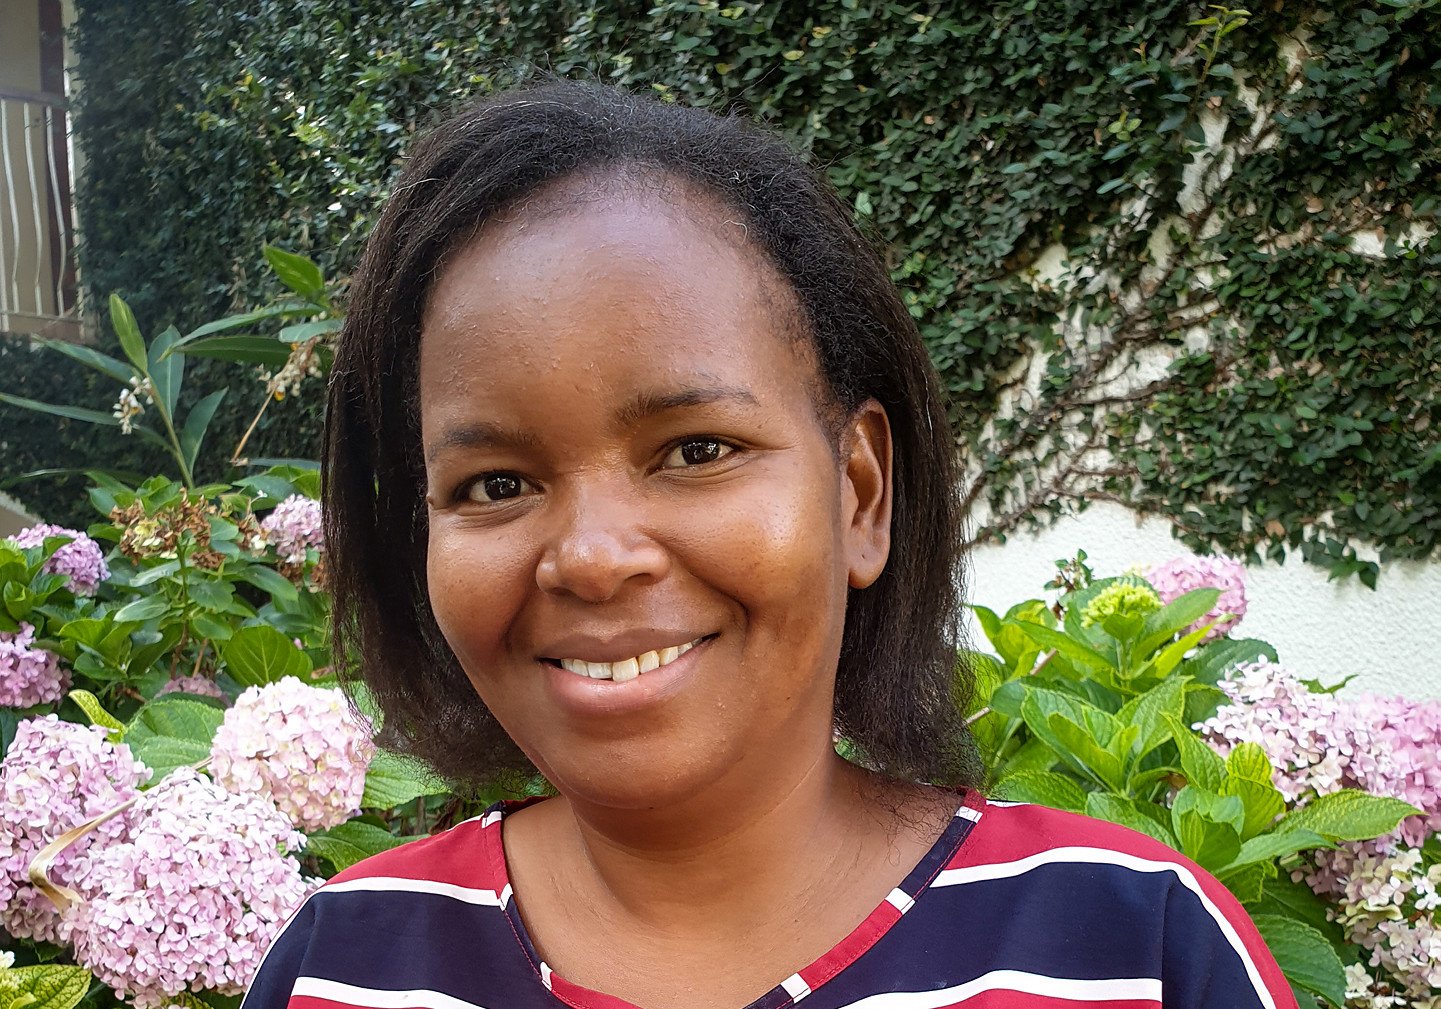 Kvinnor viktiga aktörer för hållbar fred i Zimbabwe